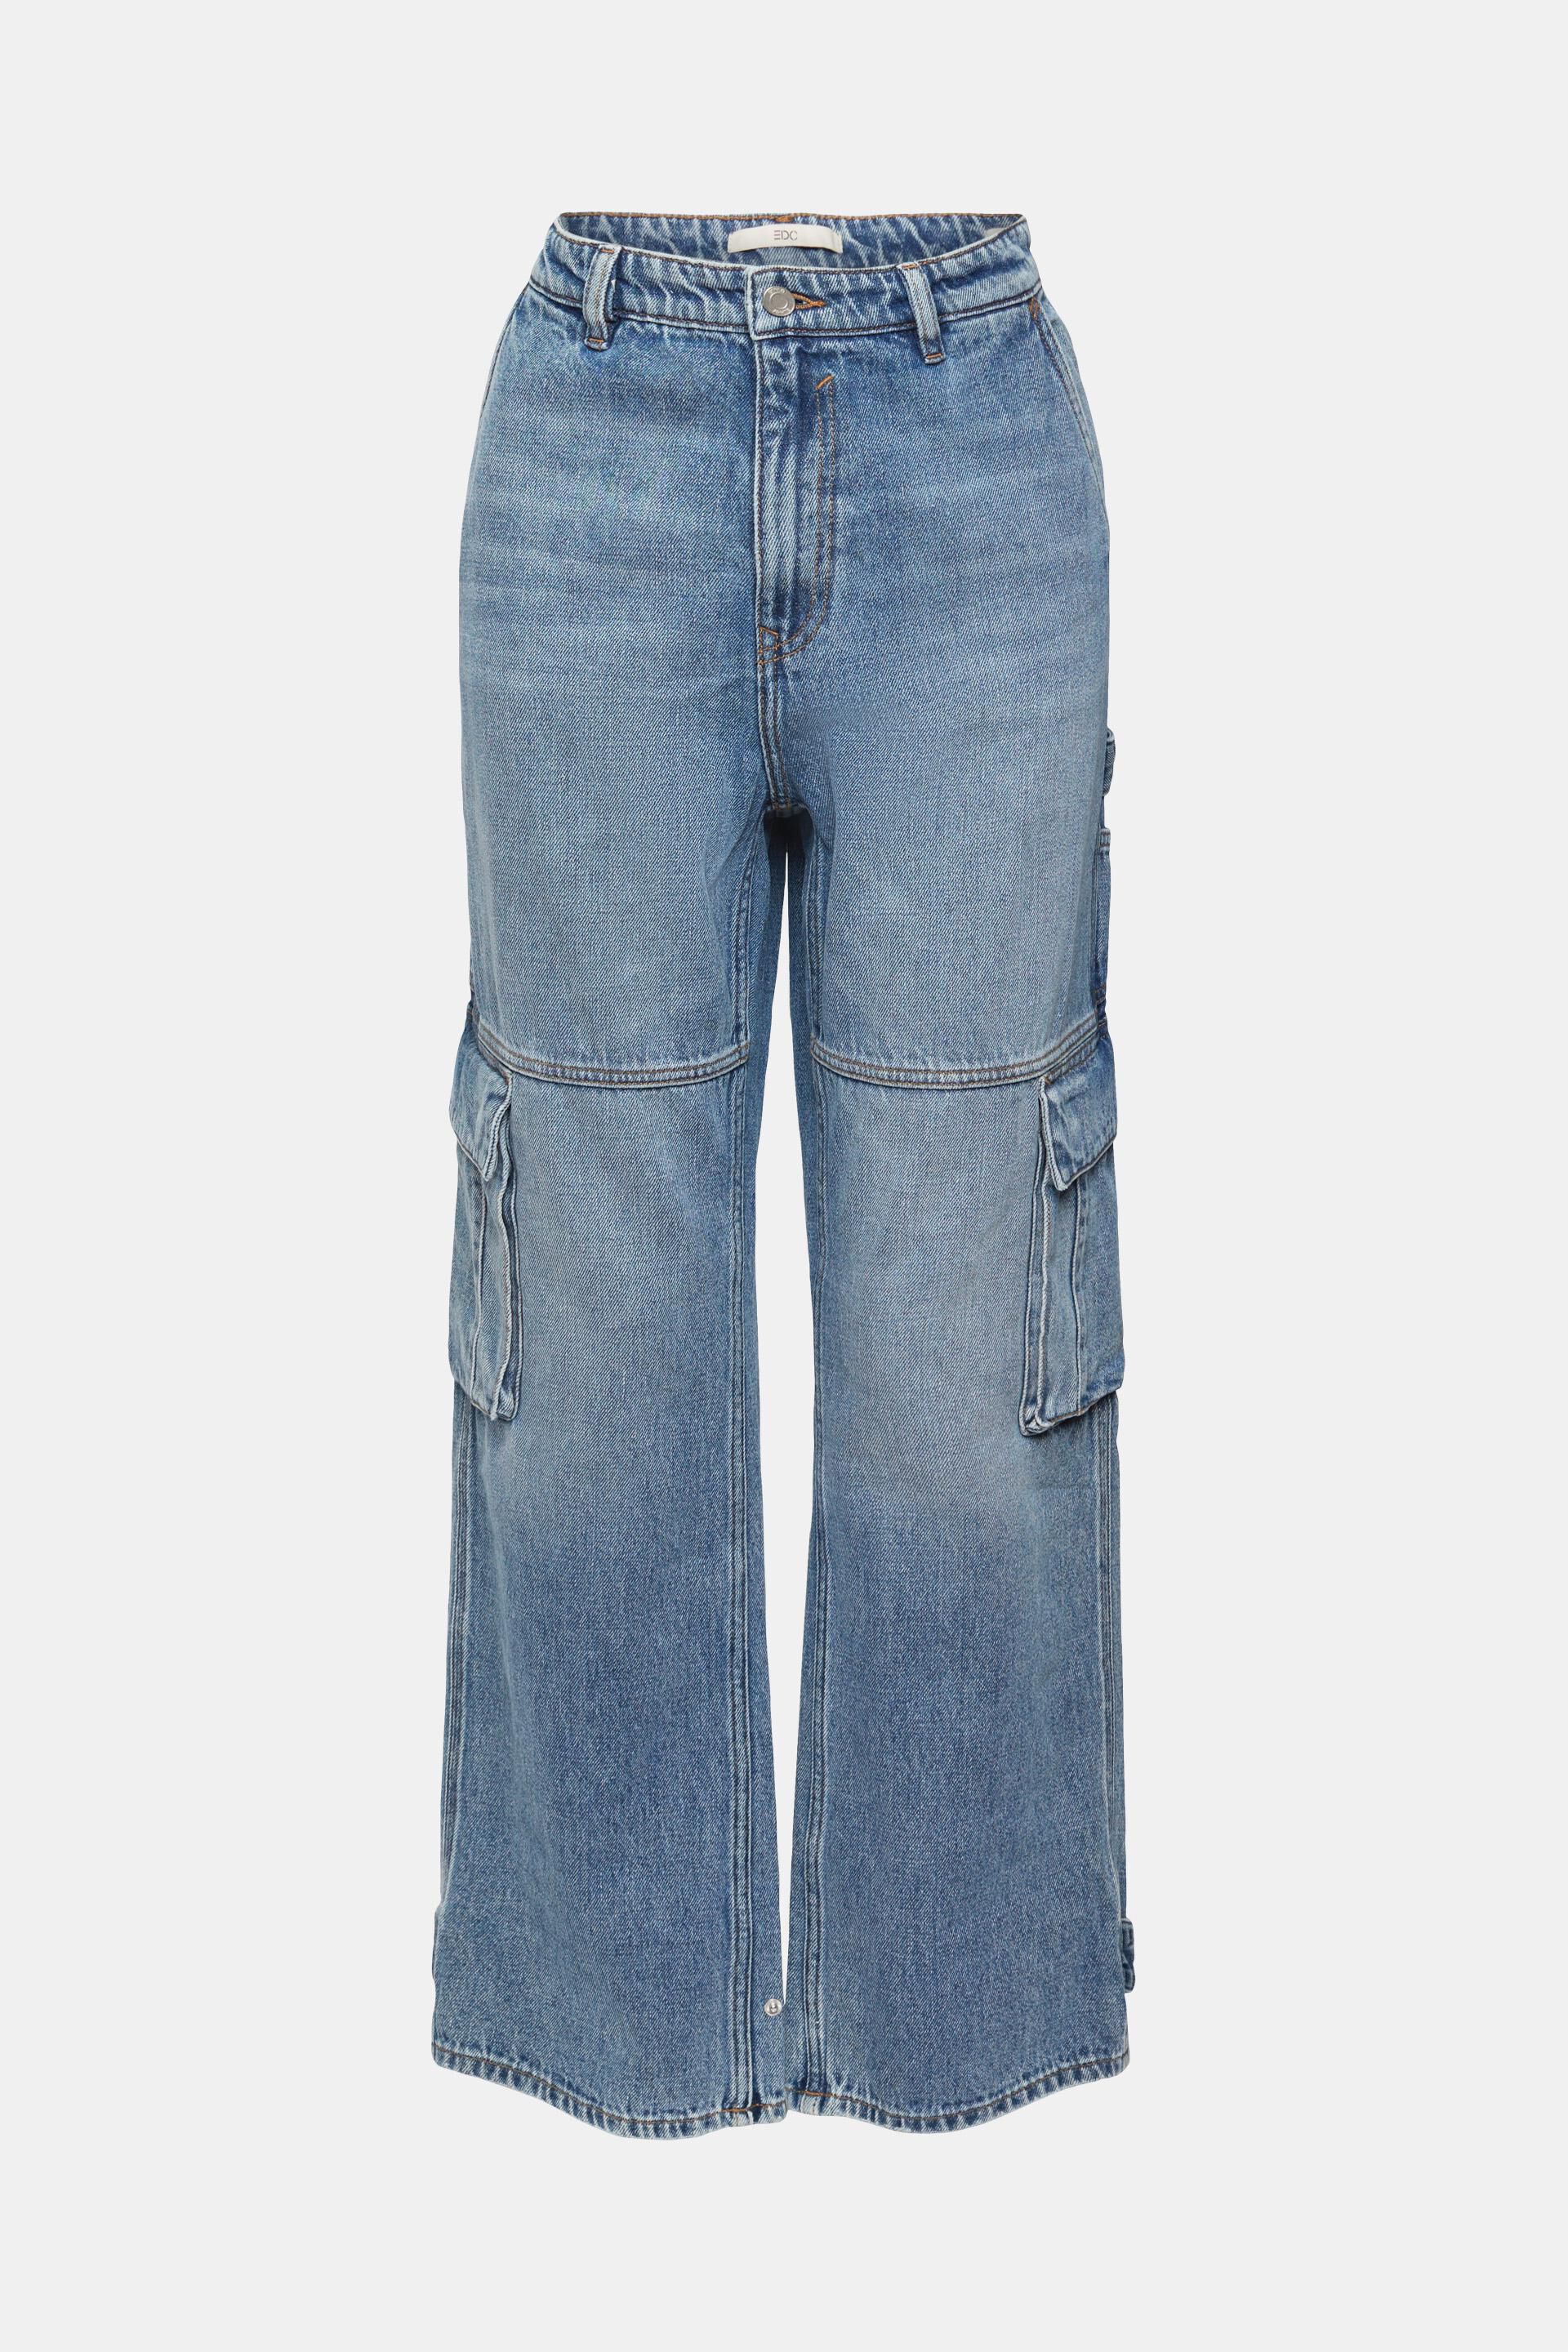 Esprit Denim 042ee1b321 Jeans in het Blauw Dames Kleding voor voor Jeans voor Jeans met wijde pijp 